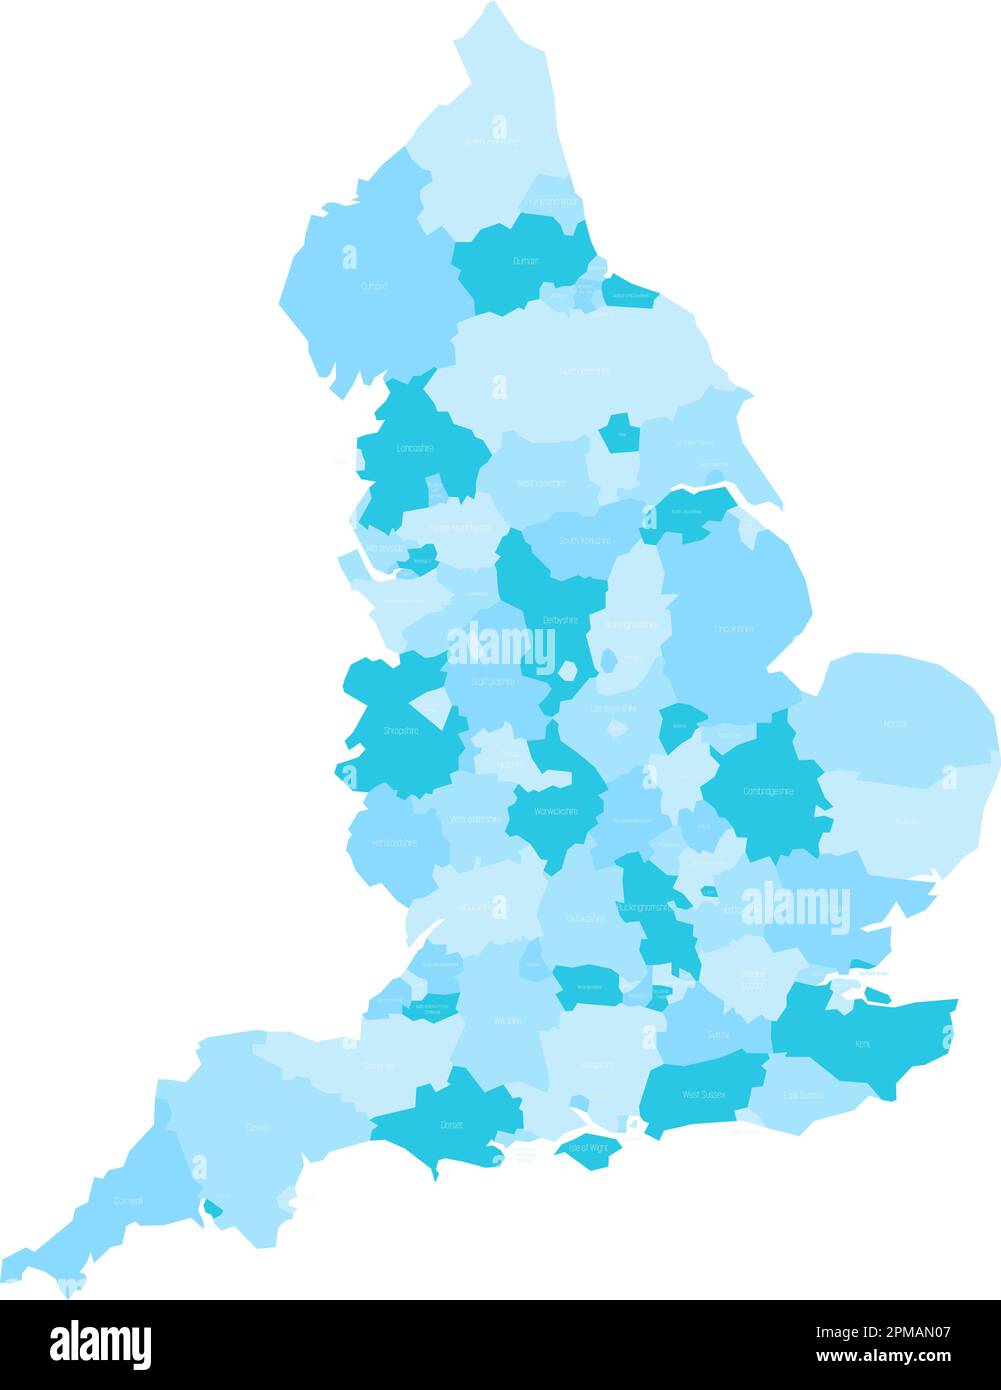 Karte der Verwaltungsbereiche in England. Metropolregionen und nicht-Metropolregionen und Einheitsbehörden. Blaue Vektorkarte mit Beschriftungen. Stock Vektor